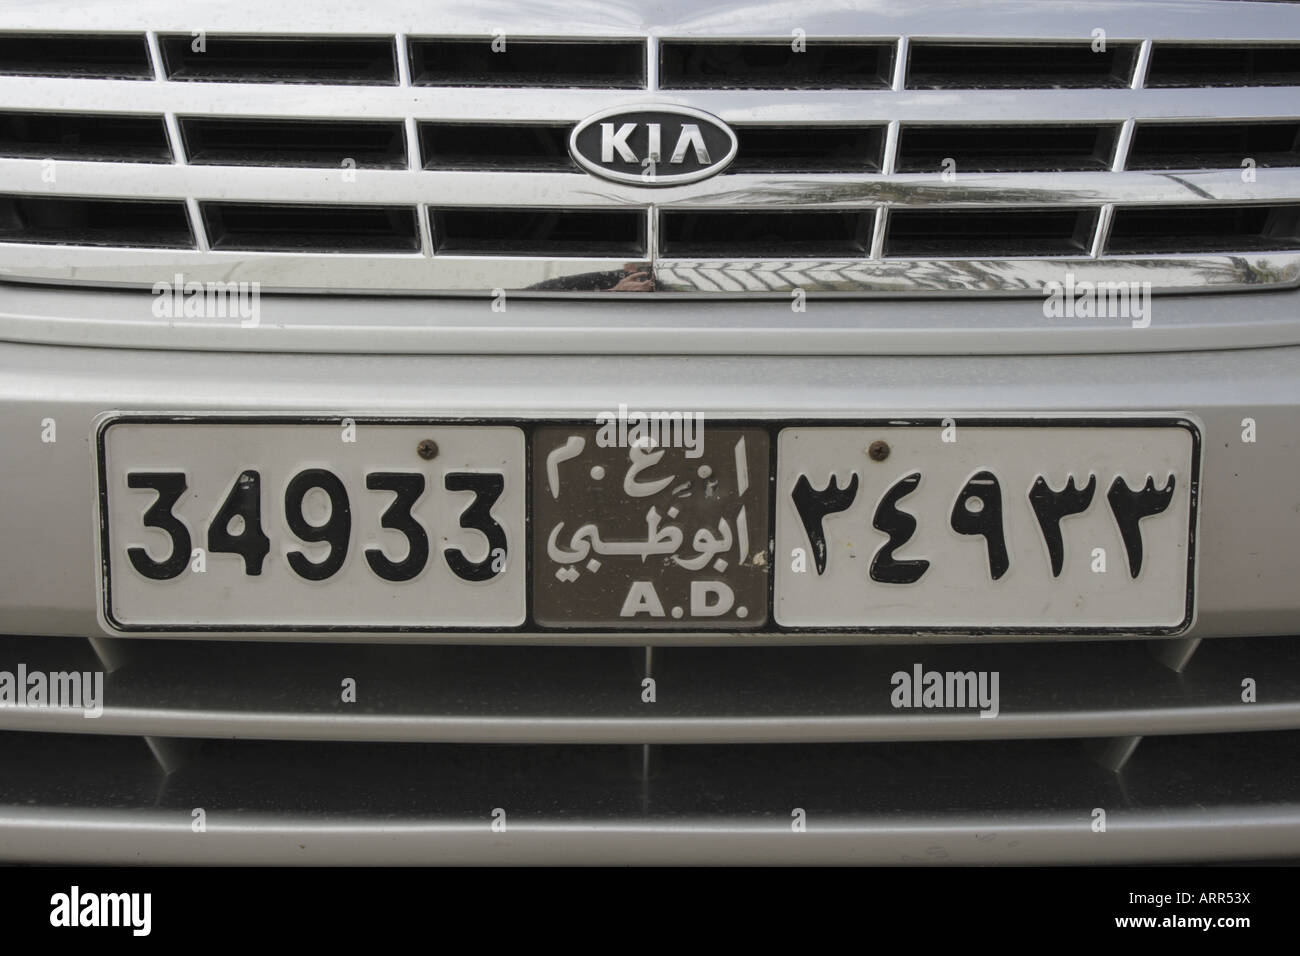 Kfz-Kennzeichen eines KIA Autos von Abu Dhabi und in Dubai, Vereinigte Arabische Emirate zu sehen. Foto: Willy Matheisl Stockfoto